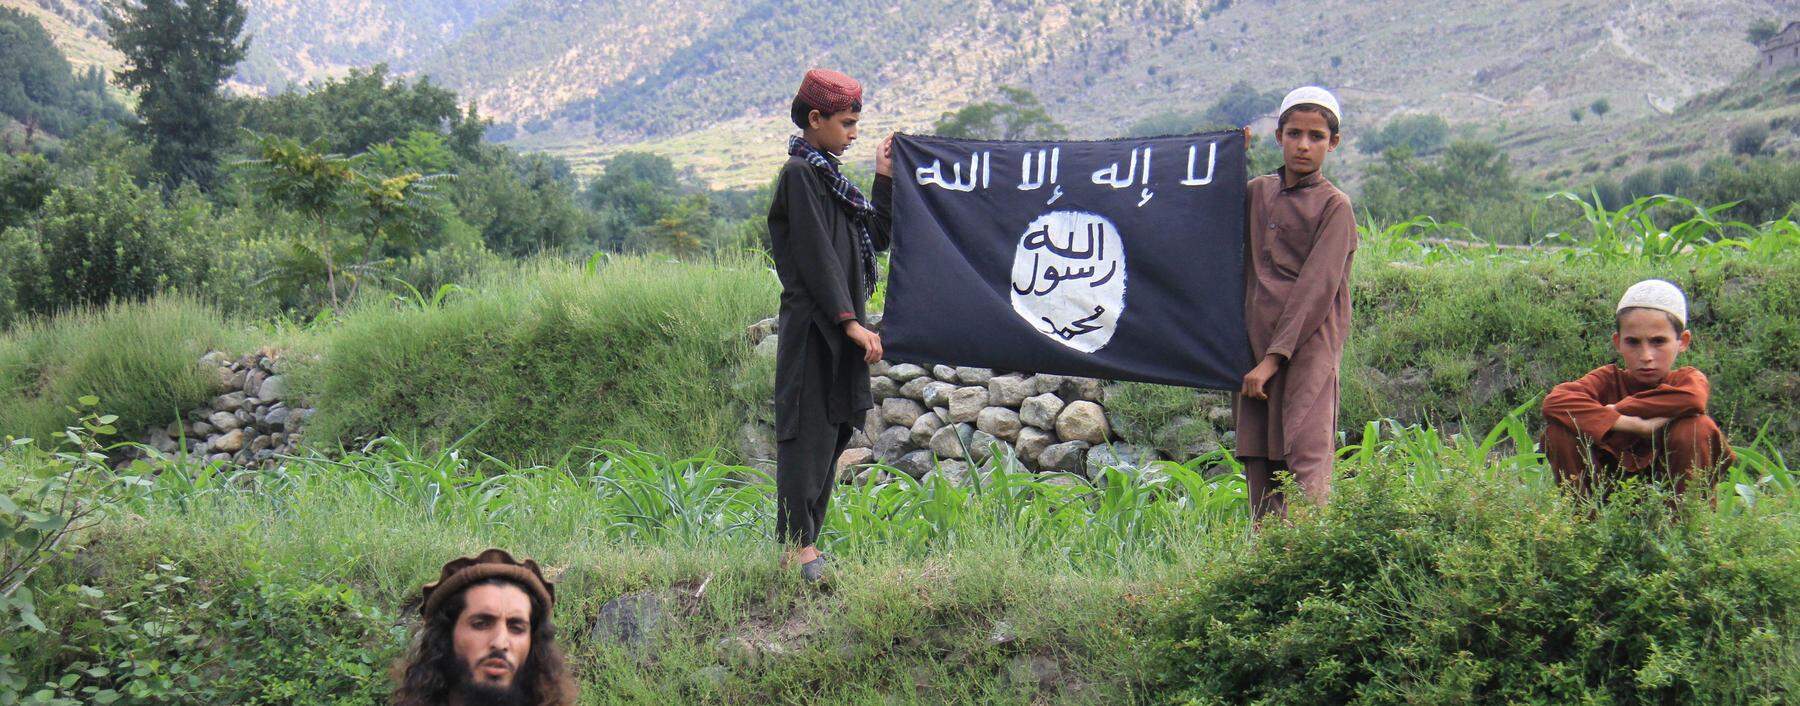 Einer der IS-Führer in der afghanischen Provinz Kunar, die sich von den Taliban losgesagt haben.